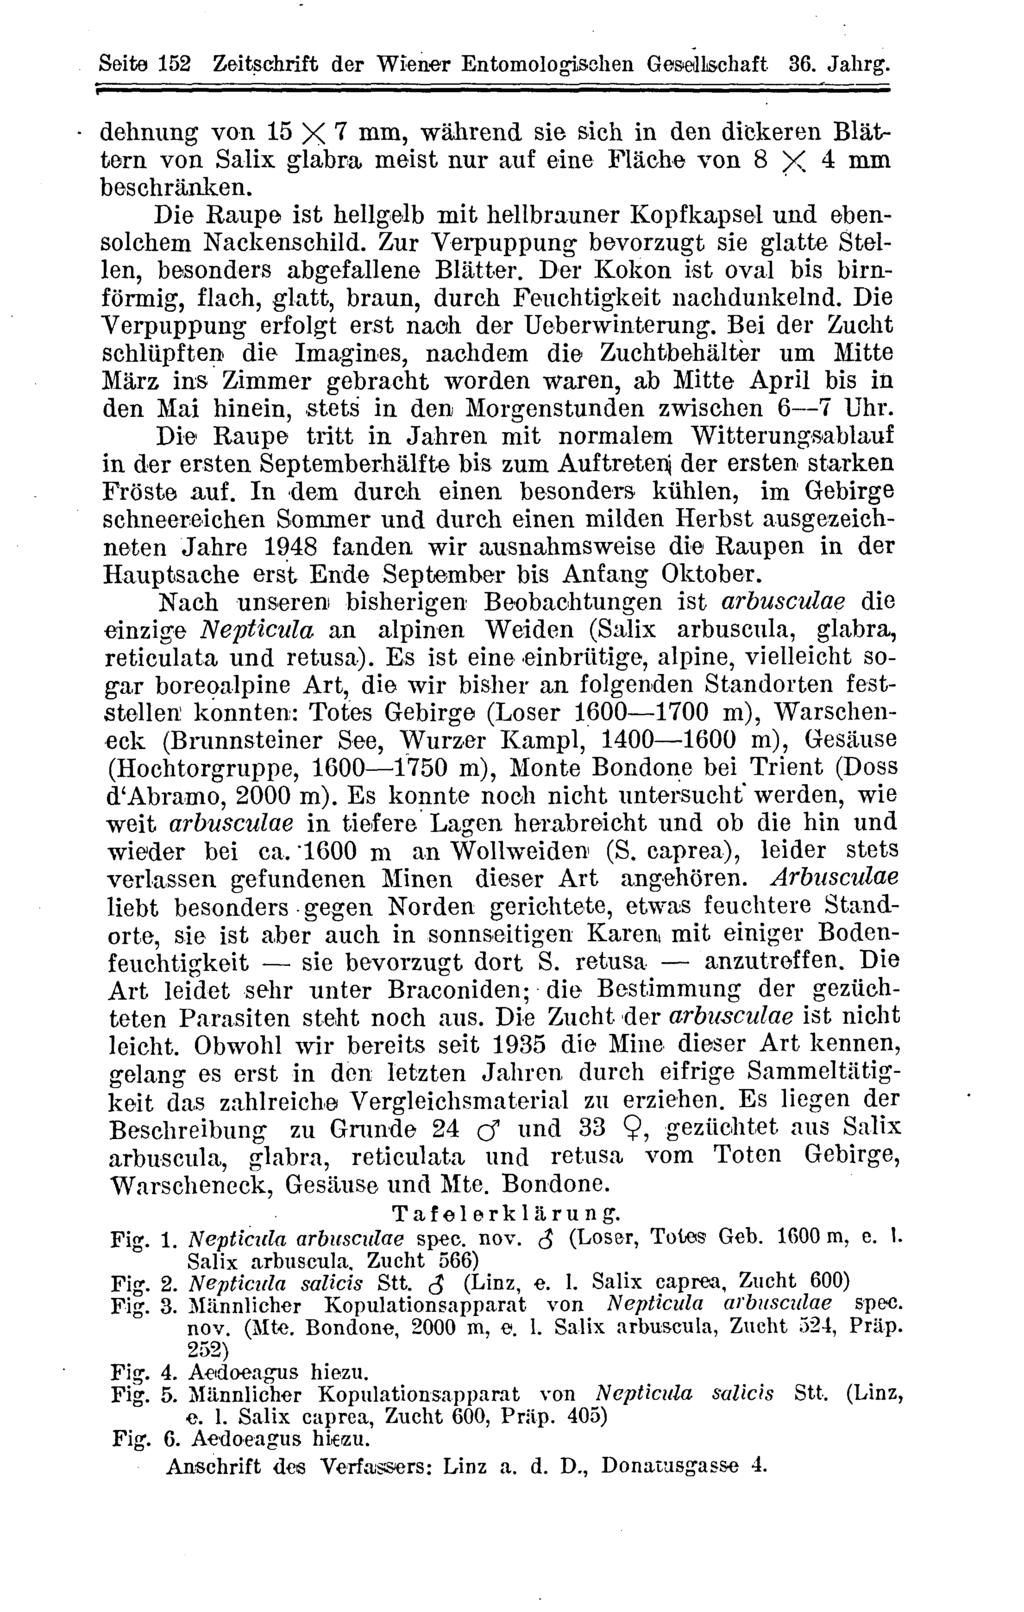 Arbeitsgemeinschaft Österreichischer Entomologen, Wien, download unter www.biologiezentrum.at Seite 152 Zeitschrift der Wiener Entomologisehen Gesellschaft 36. Jahrg.